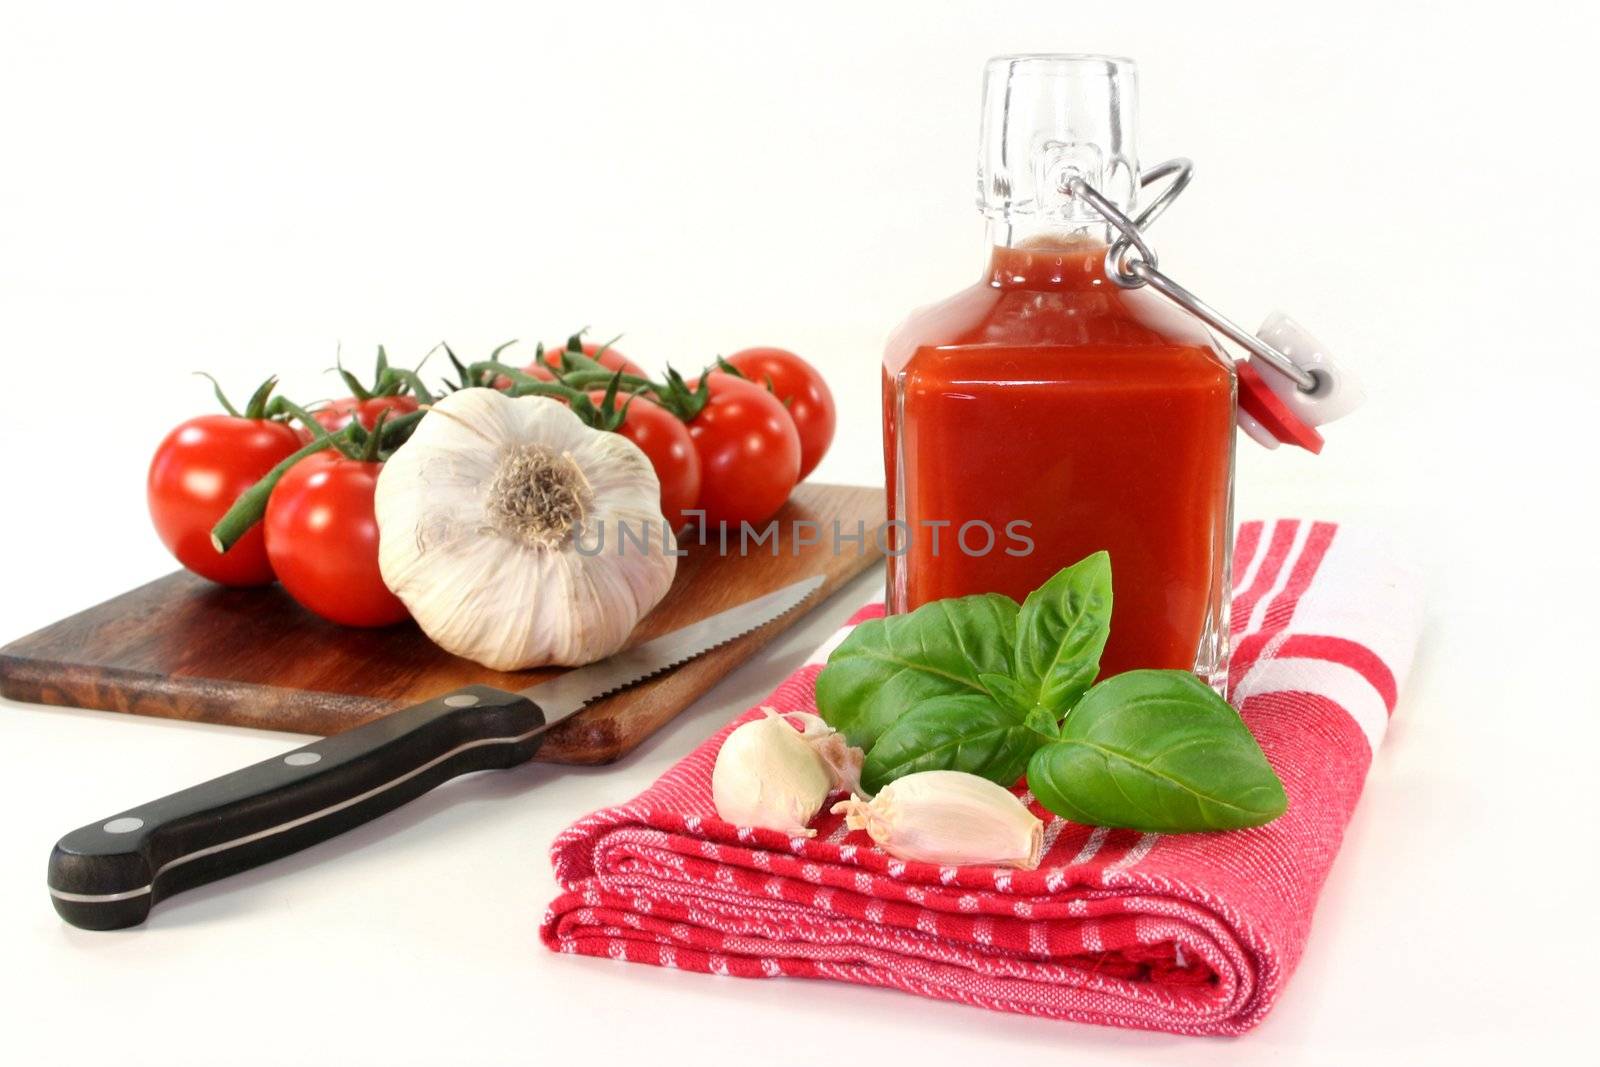 Tomato Ketchup by silencefoto